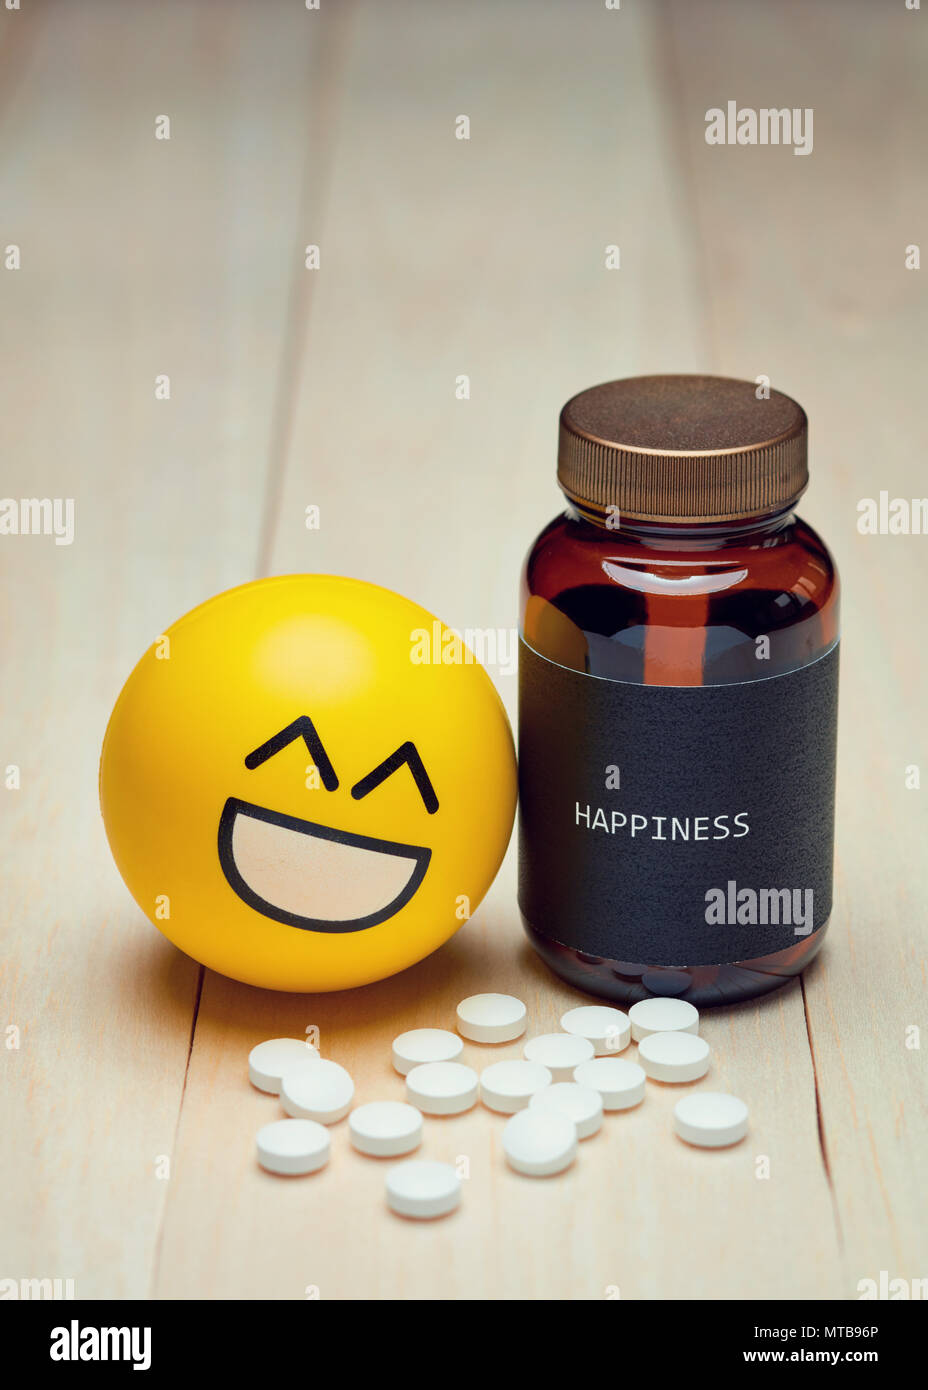 Los anti-depresivos y felicidad. Emoji sonrientes amarillo junto a un contenedor de drogas con una etiqueta negra escrita sobre la felicidad. Pastillas de color blanco sobre la mesa. Foto de stock